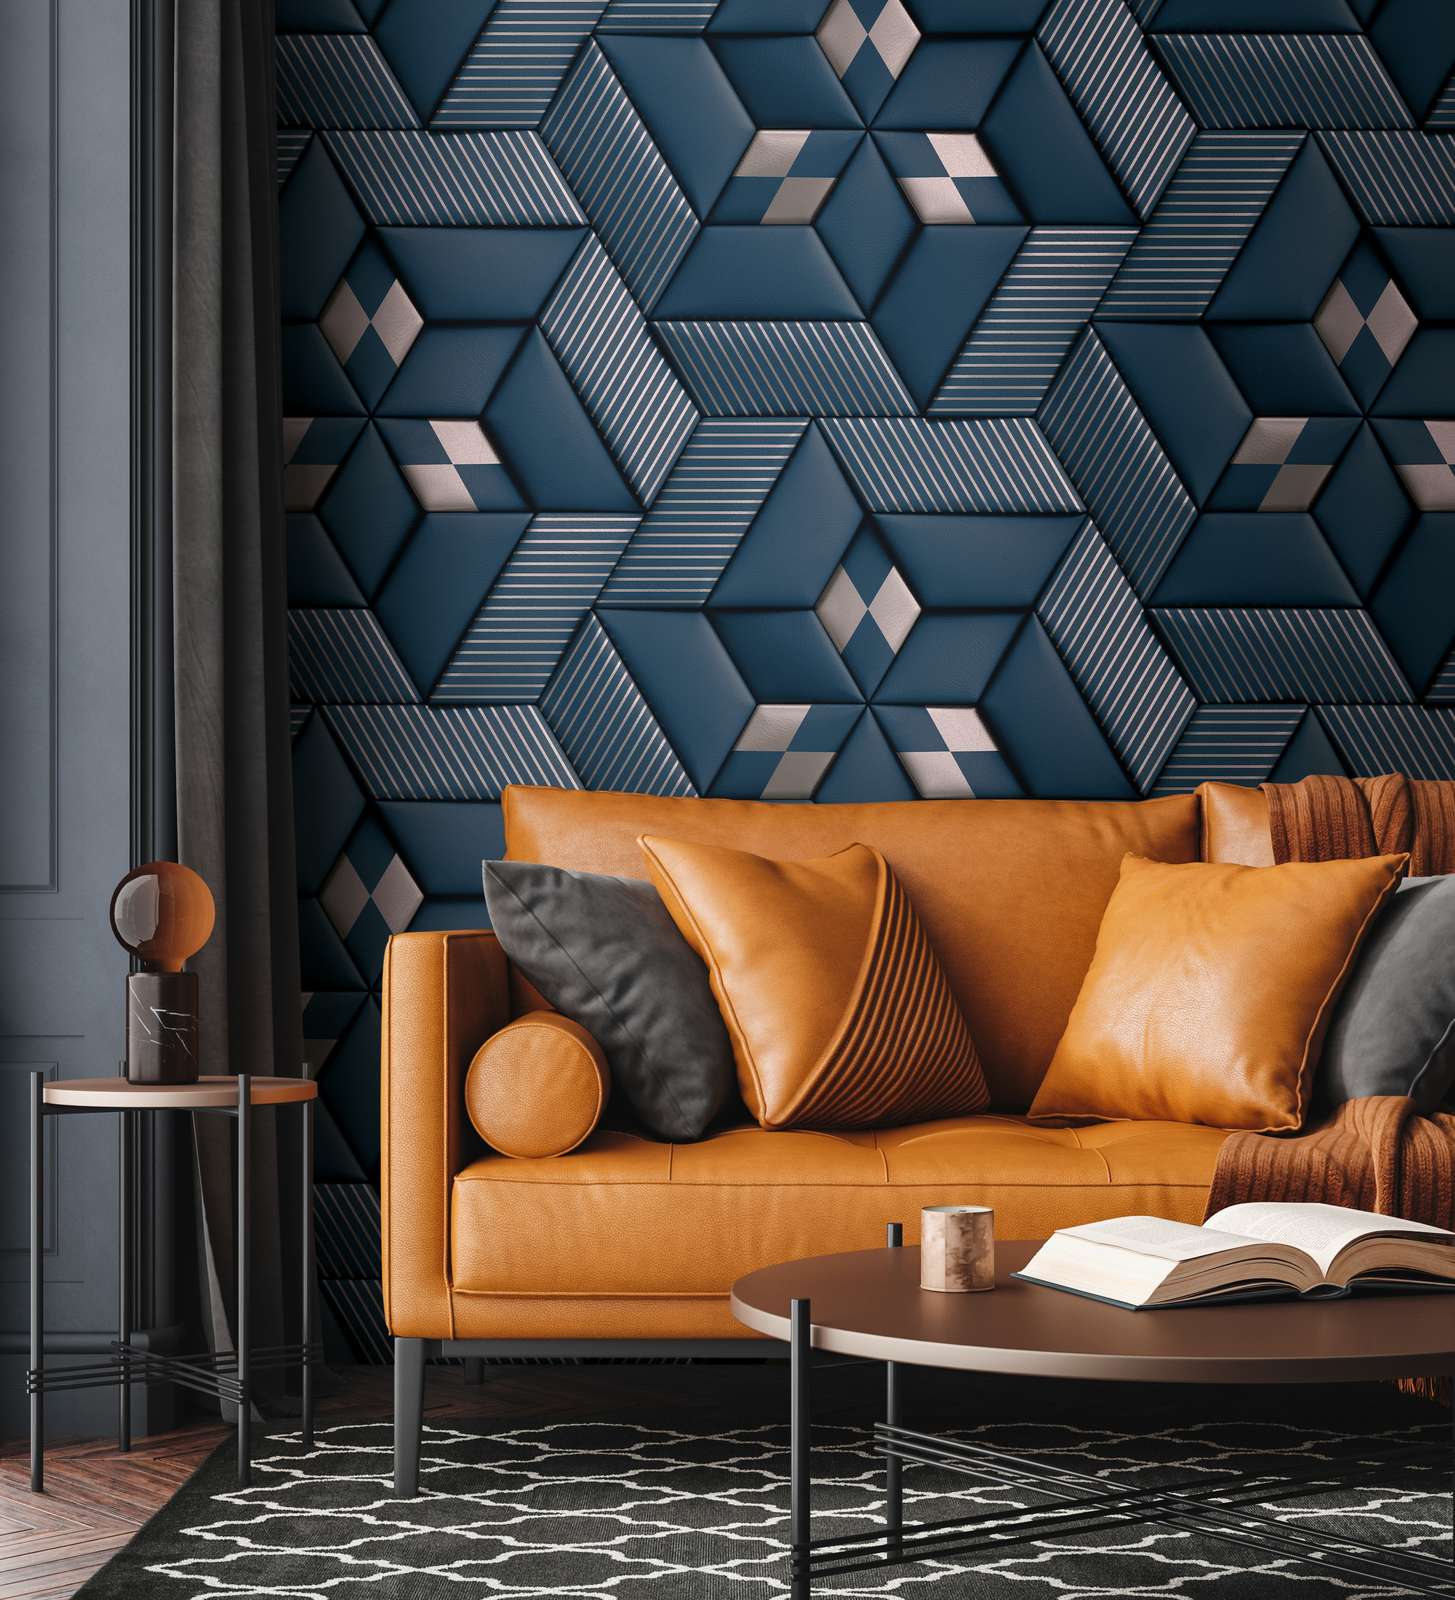             Vliesbehang met abstract 3D patroon - blauw, zilver
        